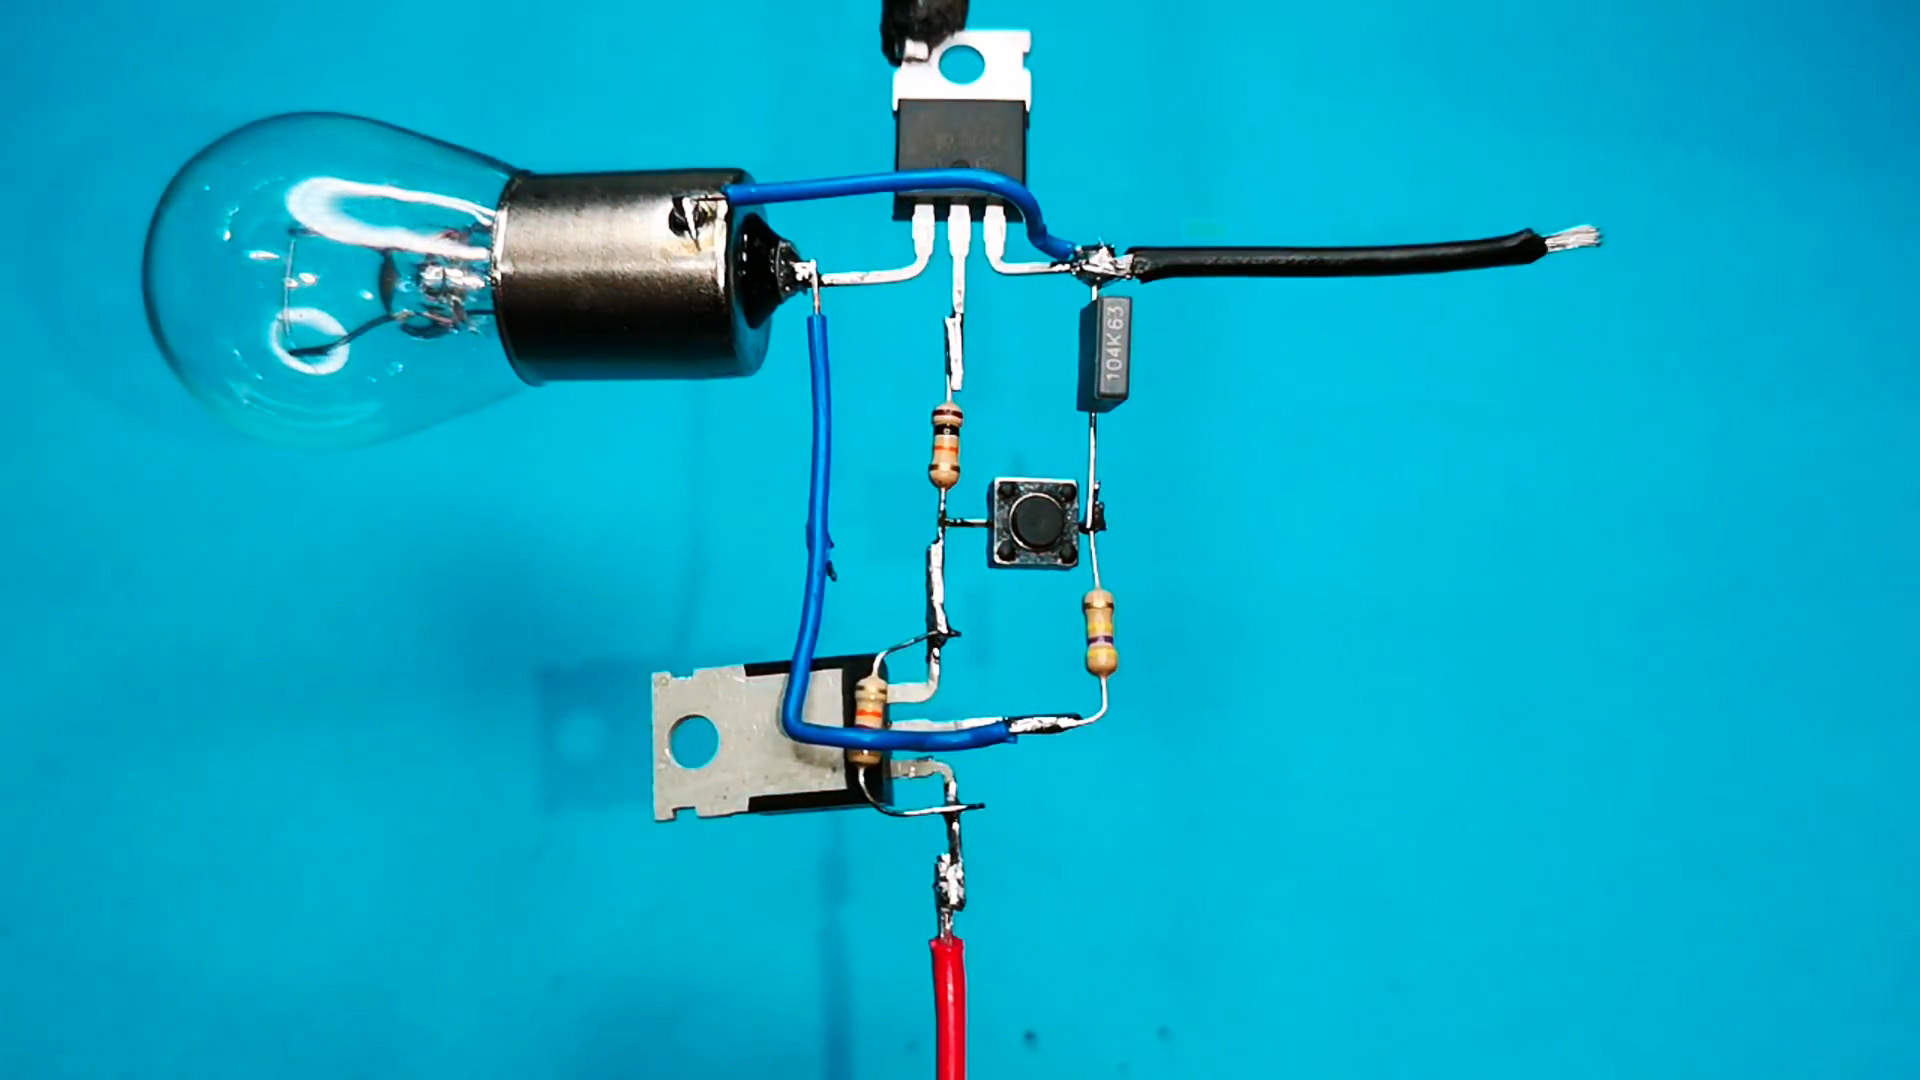 Транзисторный переключатель для управления мощной нагрузкой кнопкой без фиксации